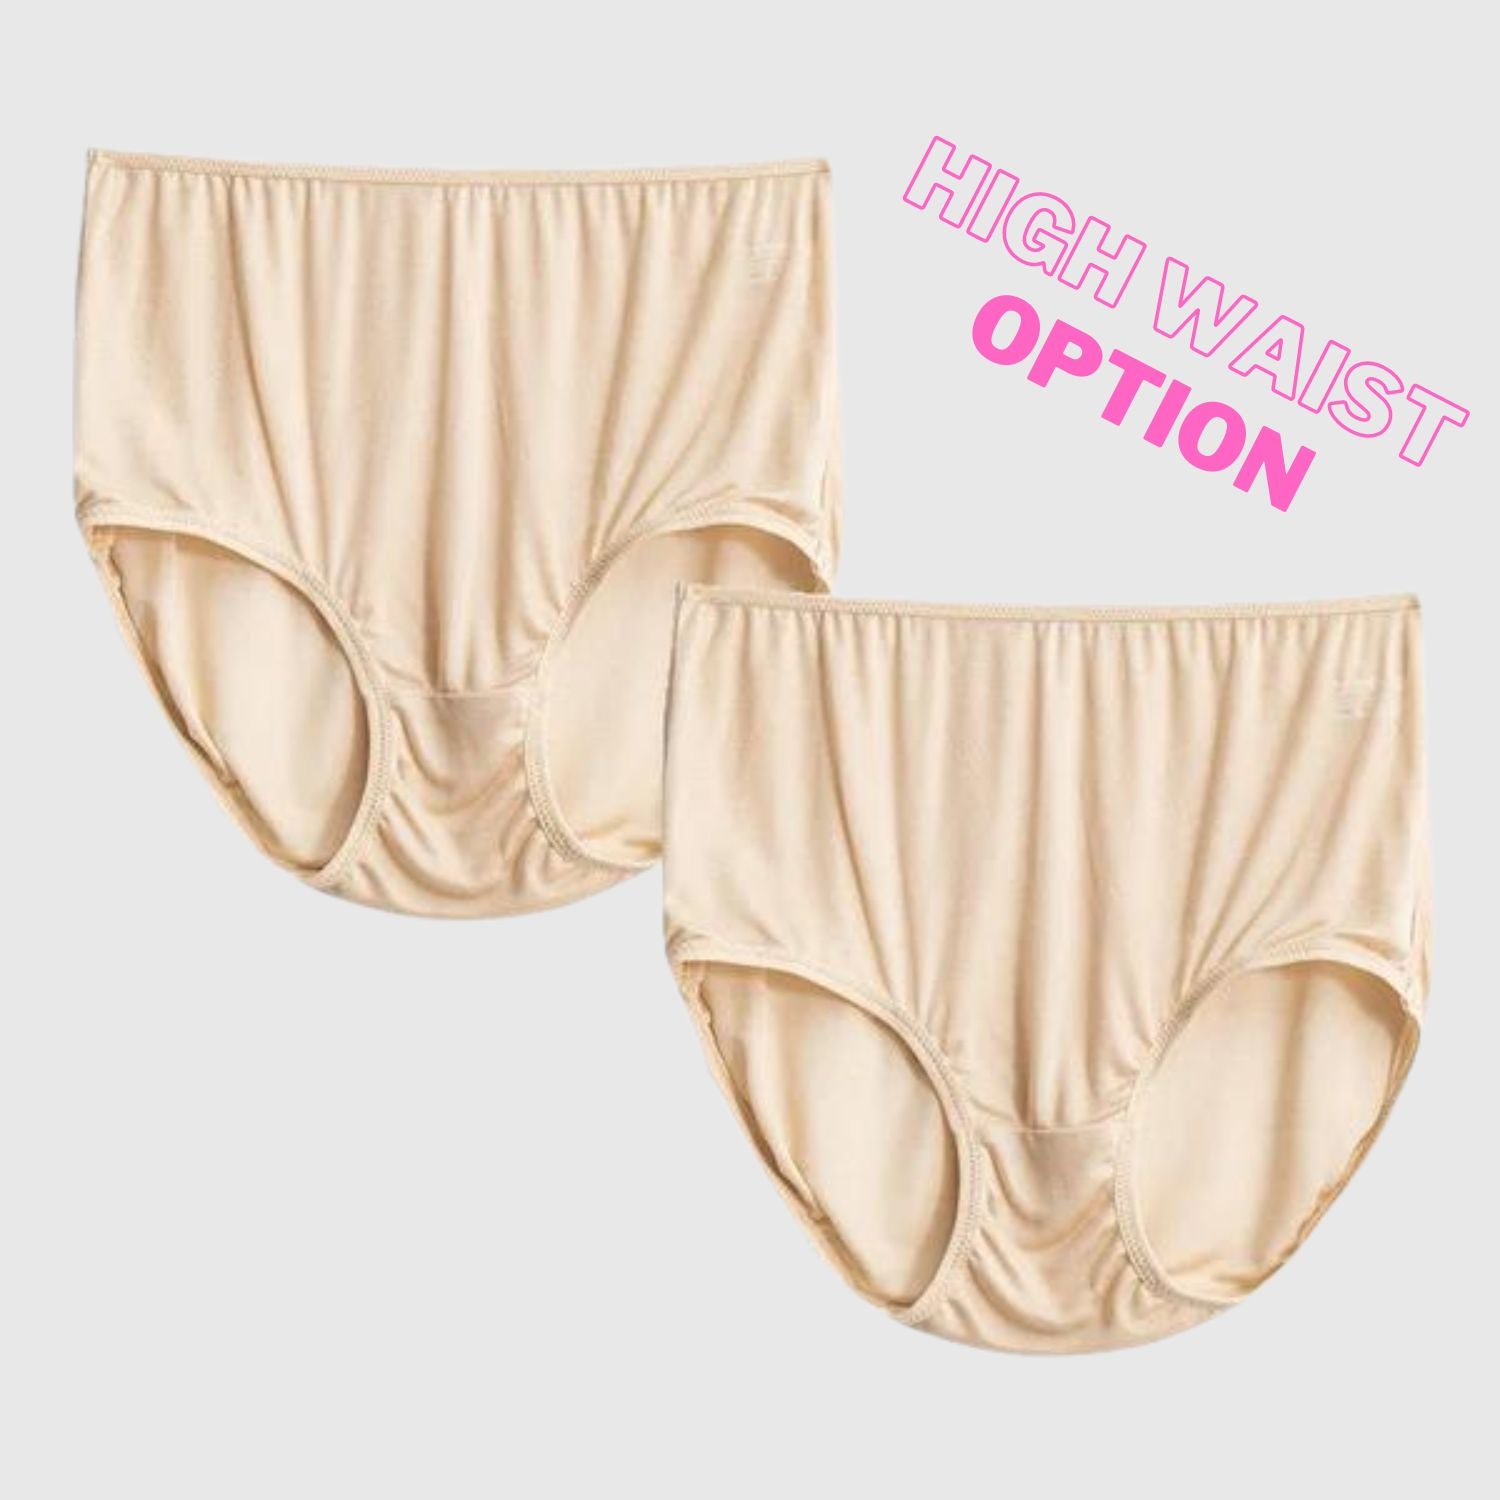 Underwear ladies cotton bottom high waist abdomen cotton quality